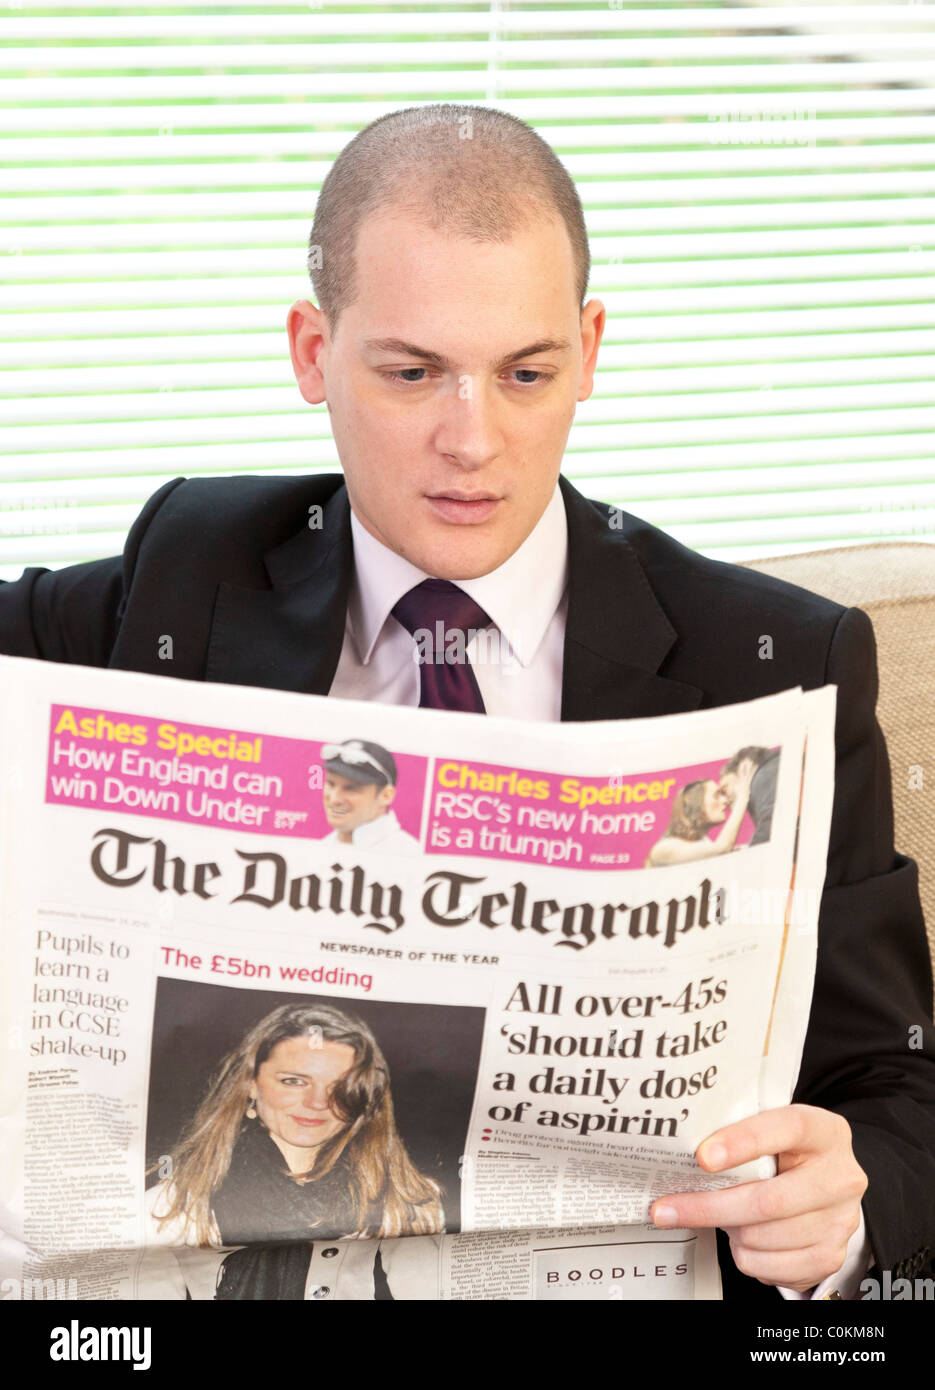 Homme lisant le journal Daily Telegraph en UK Banque D'Images